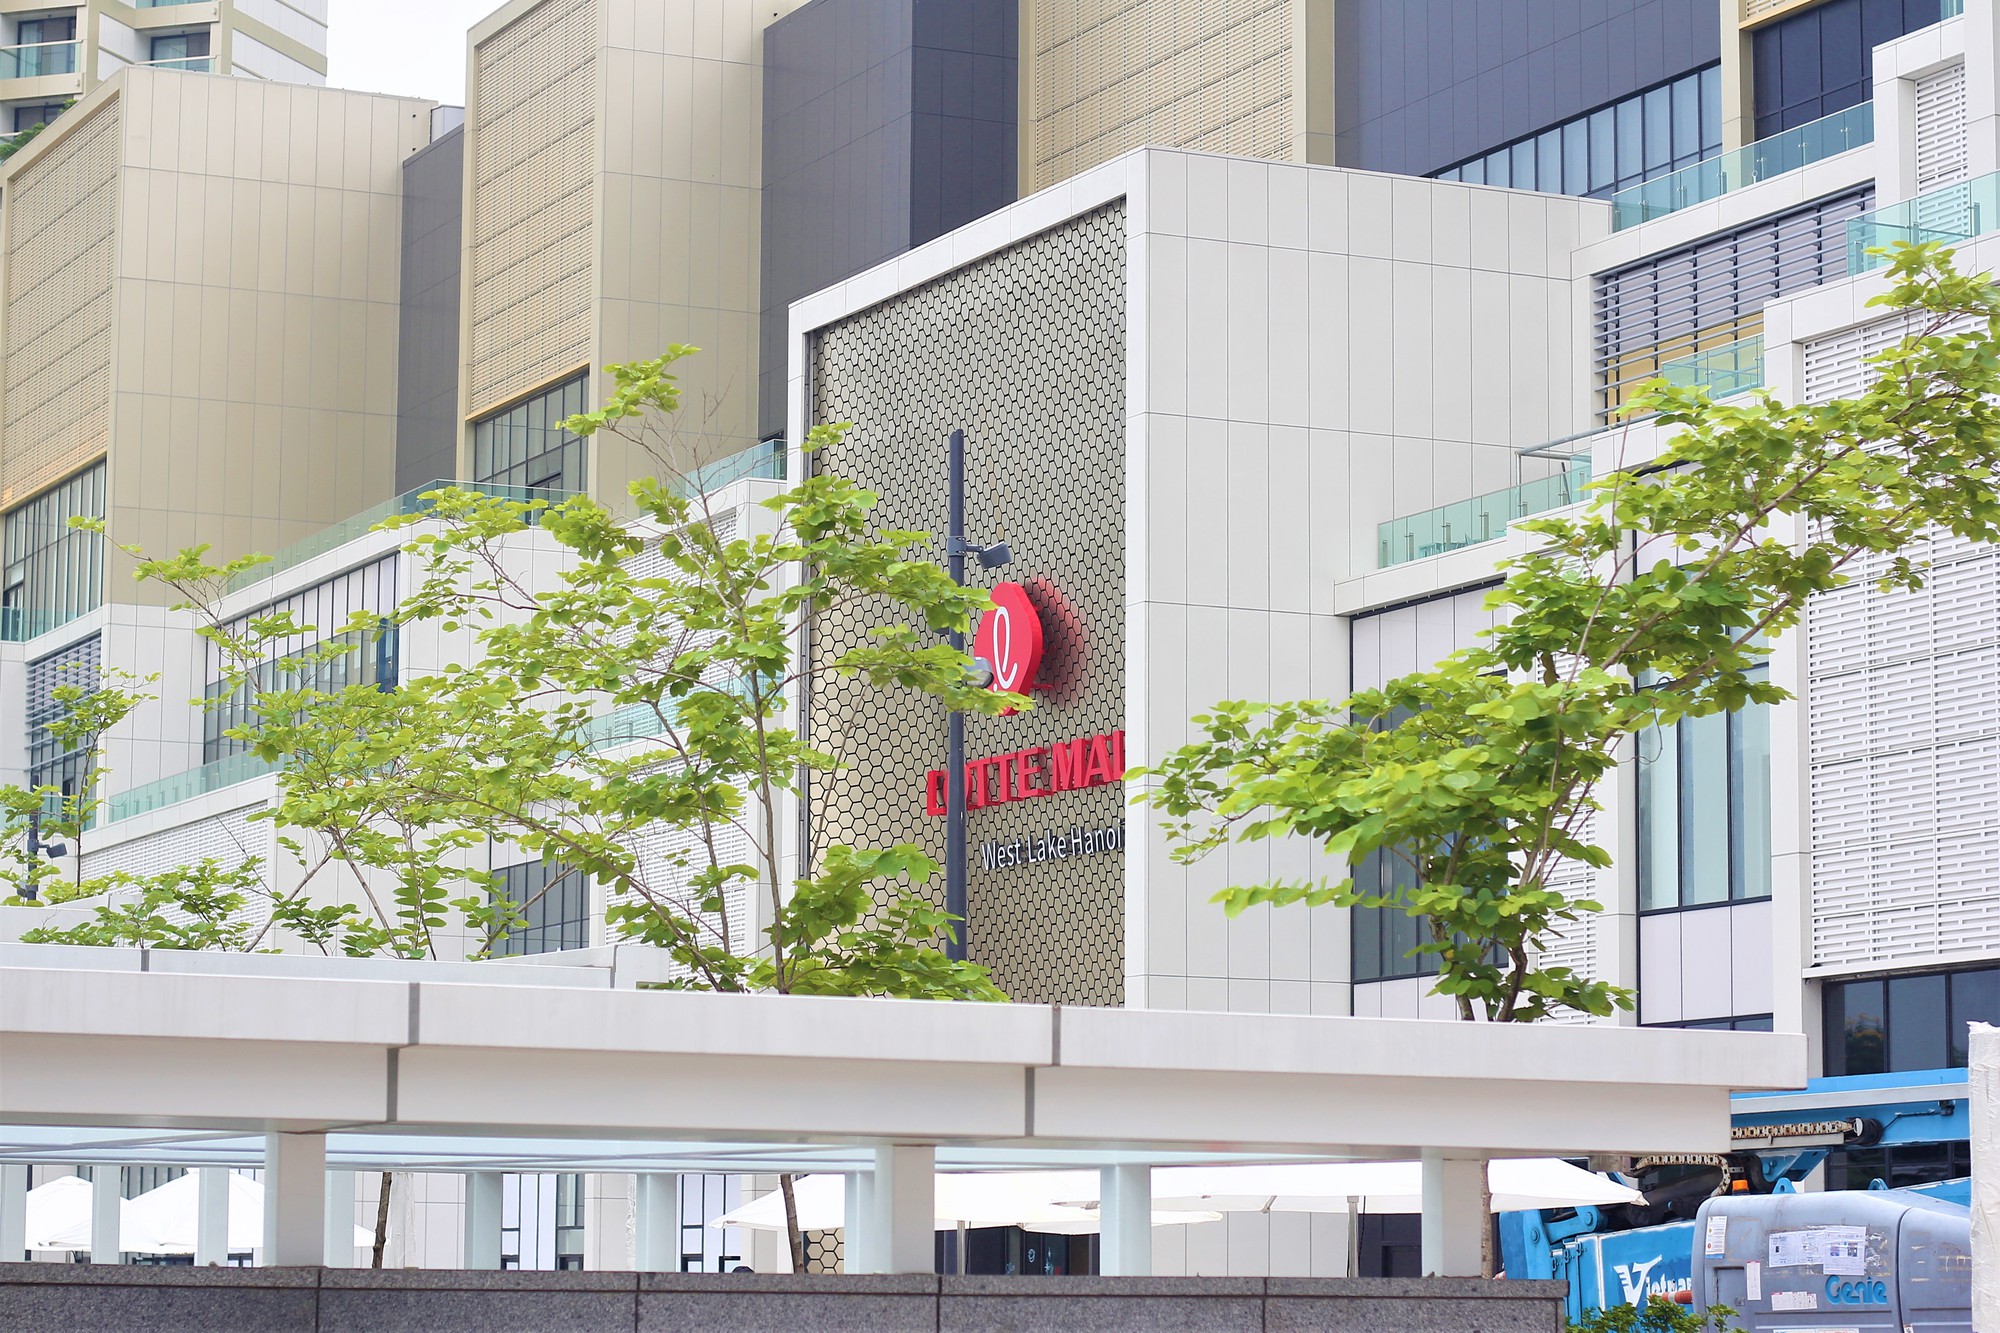 Chiêm ngưỡng trung tâm thương mại lớn nhất của Lotte tại Việt Nam - Ảnh 1.